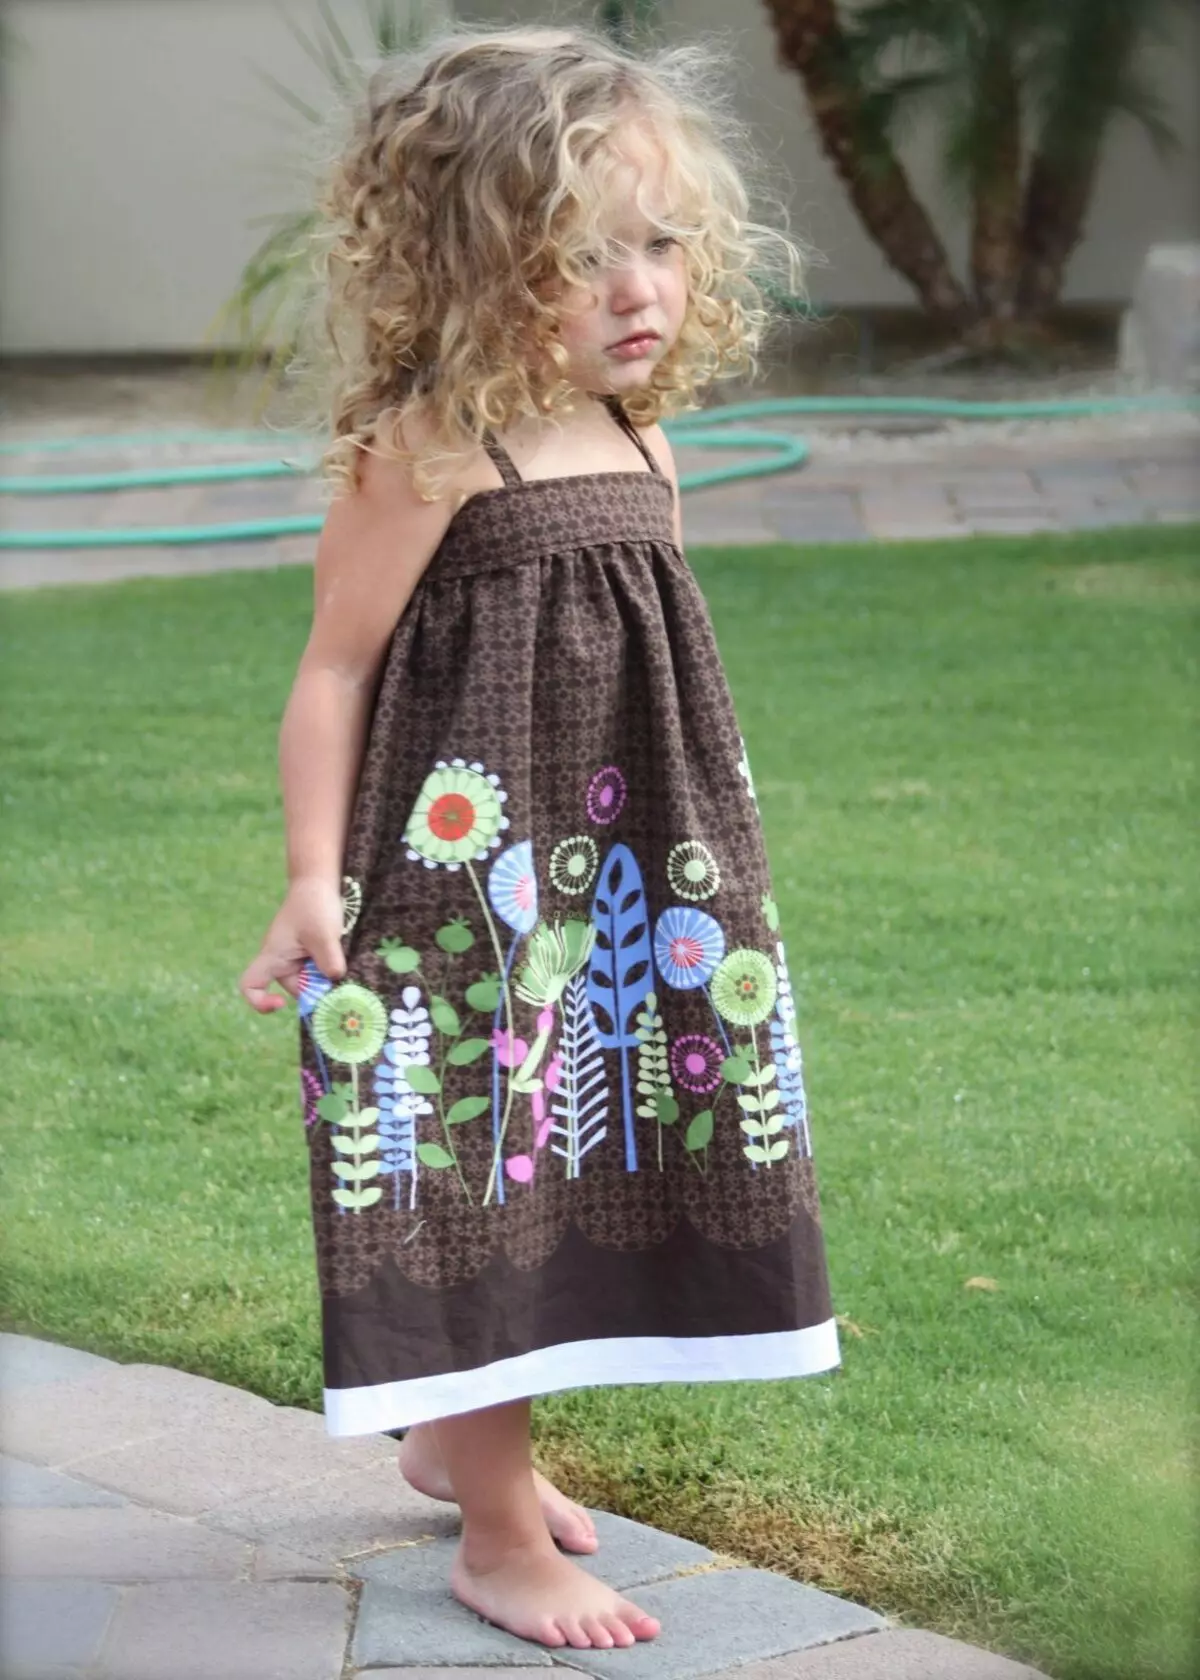 Elegant saraf dress na may floral print para sa girl.